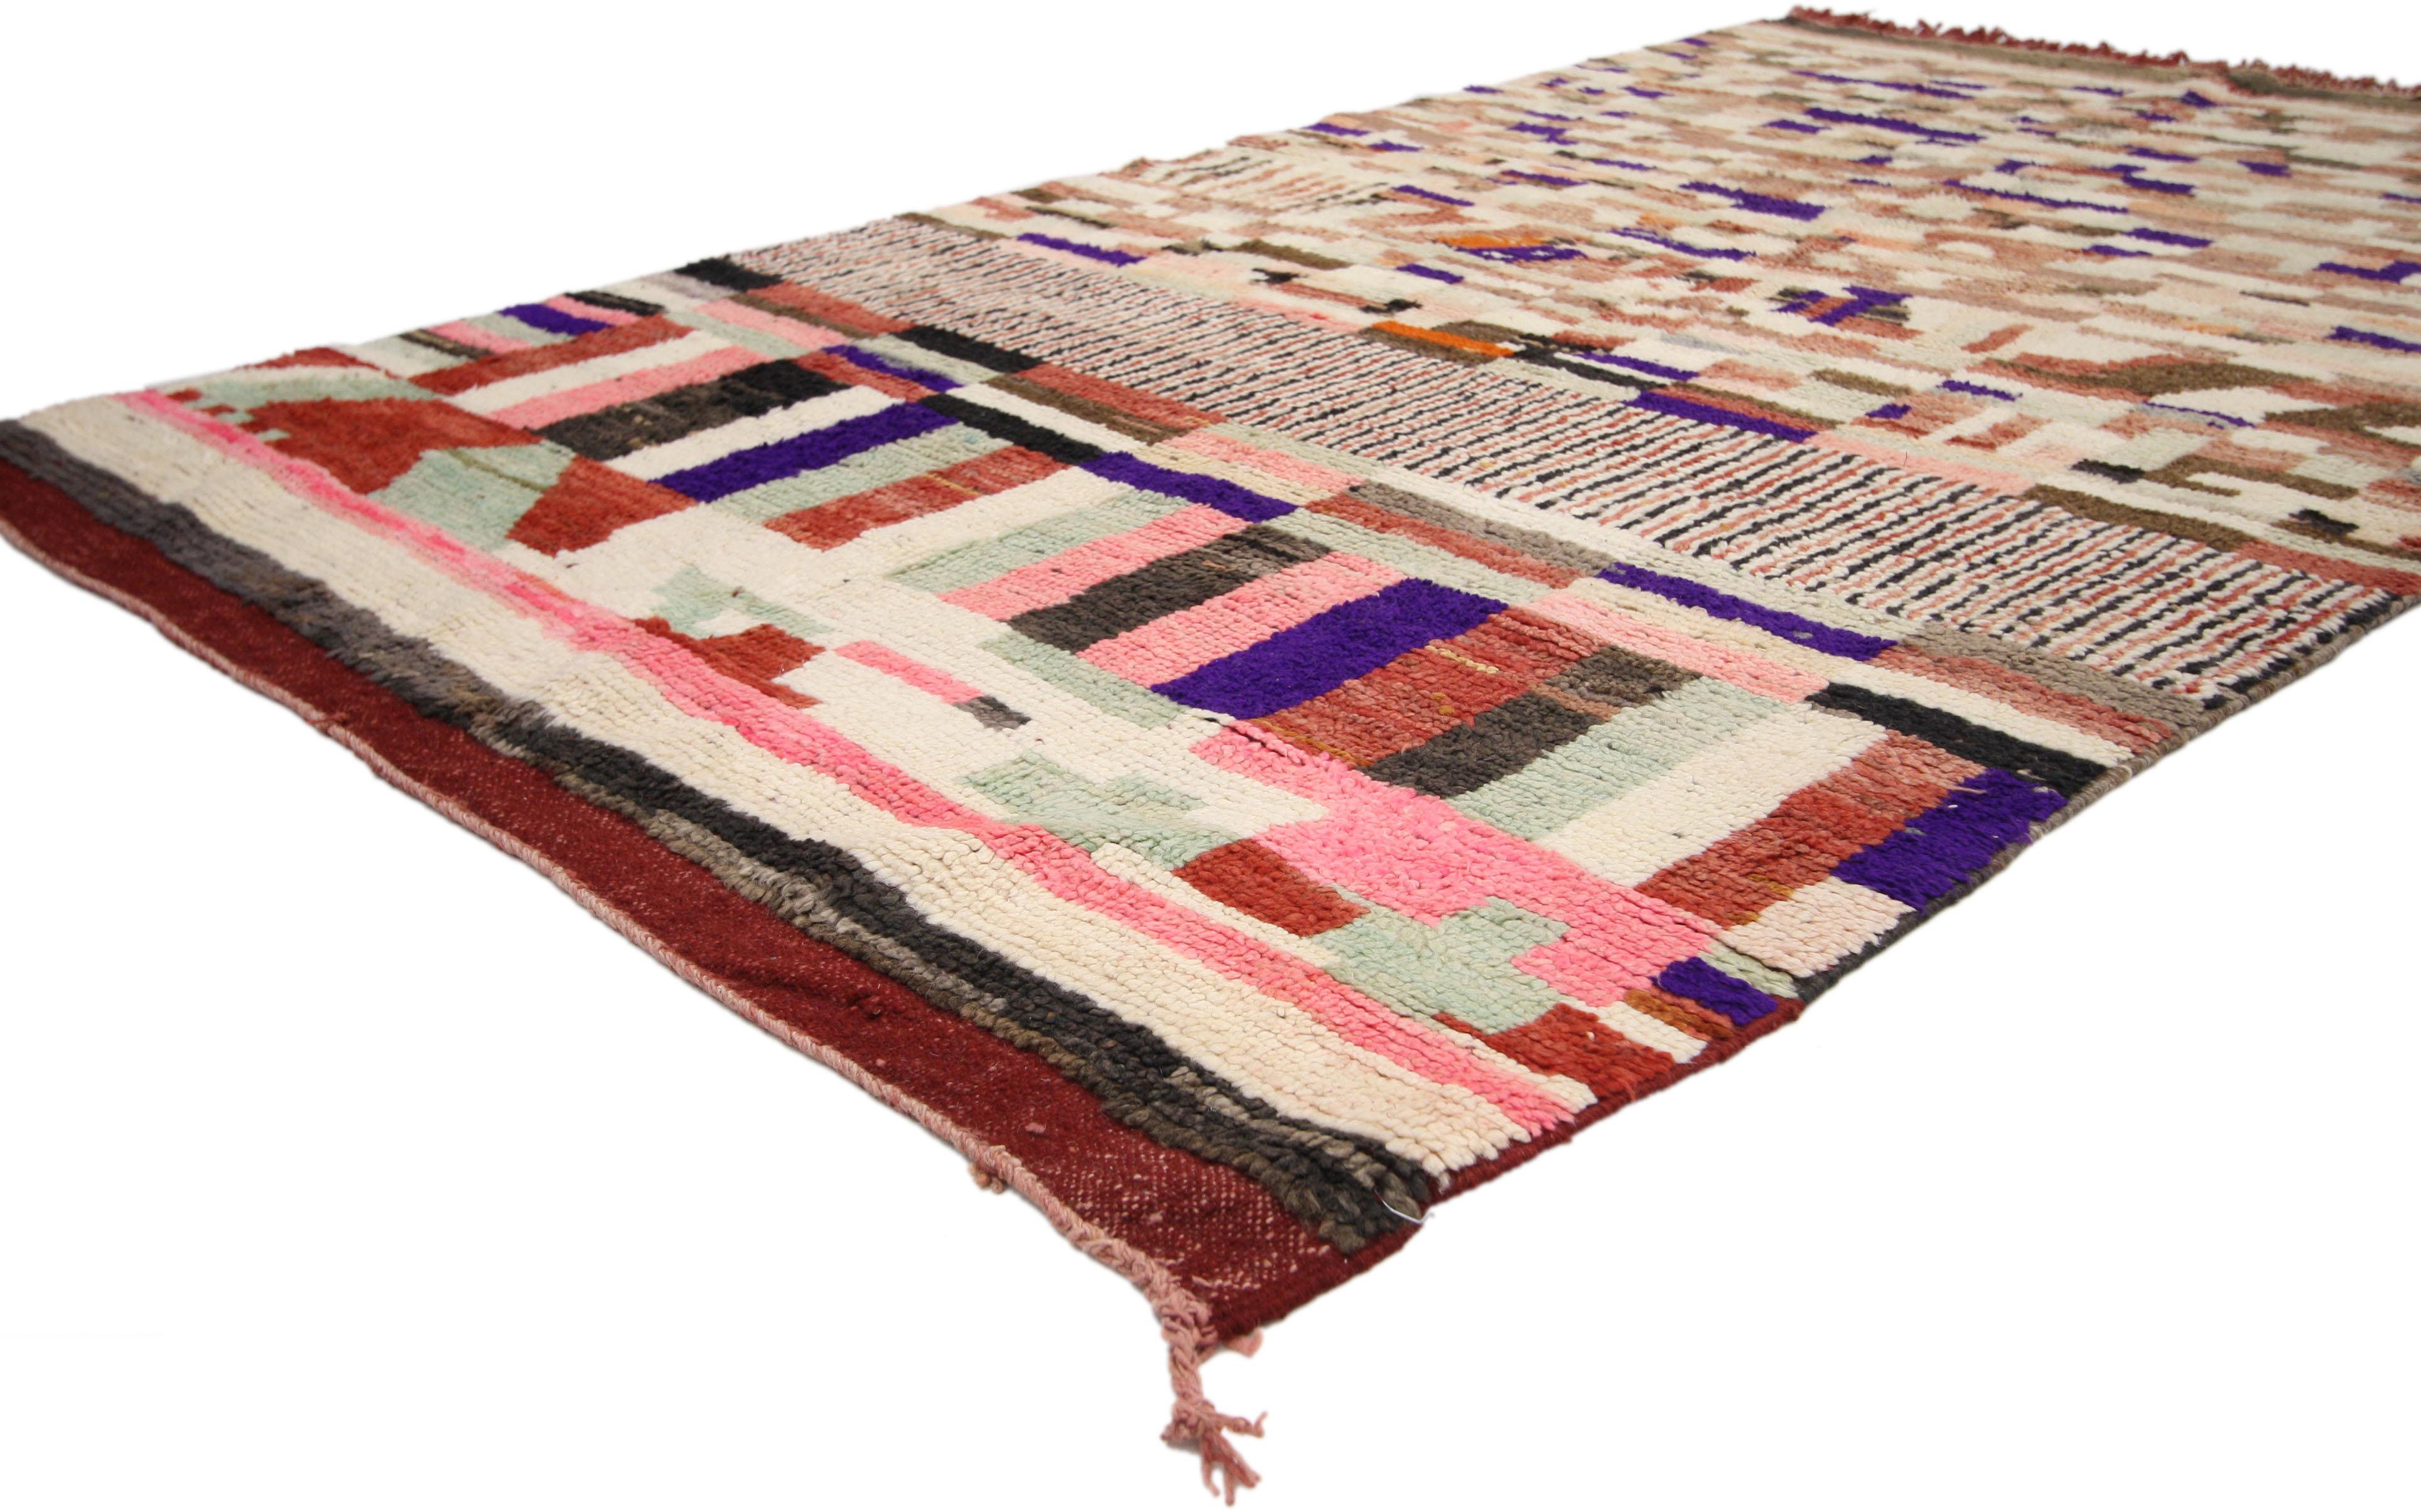 74827, tapis berbère marocain Rehamna au style expressionniste abstrait bohème. Ce tapis marocain Rehamna en laine nouée à la main présente un design asymétrique et un style expressionniste bohème composé de formes géométriques. Les différentes